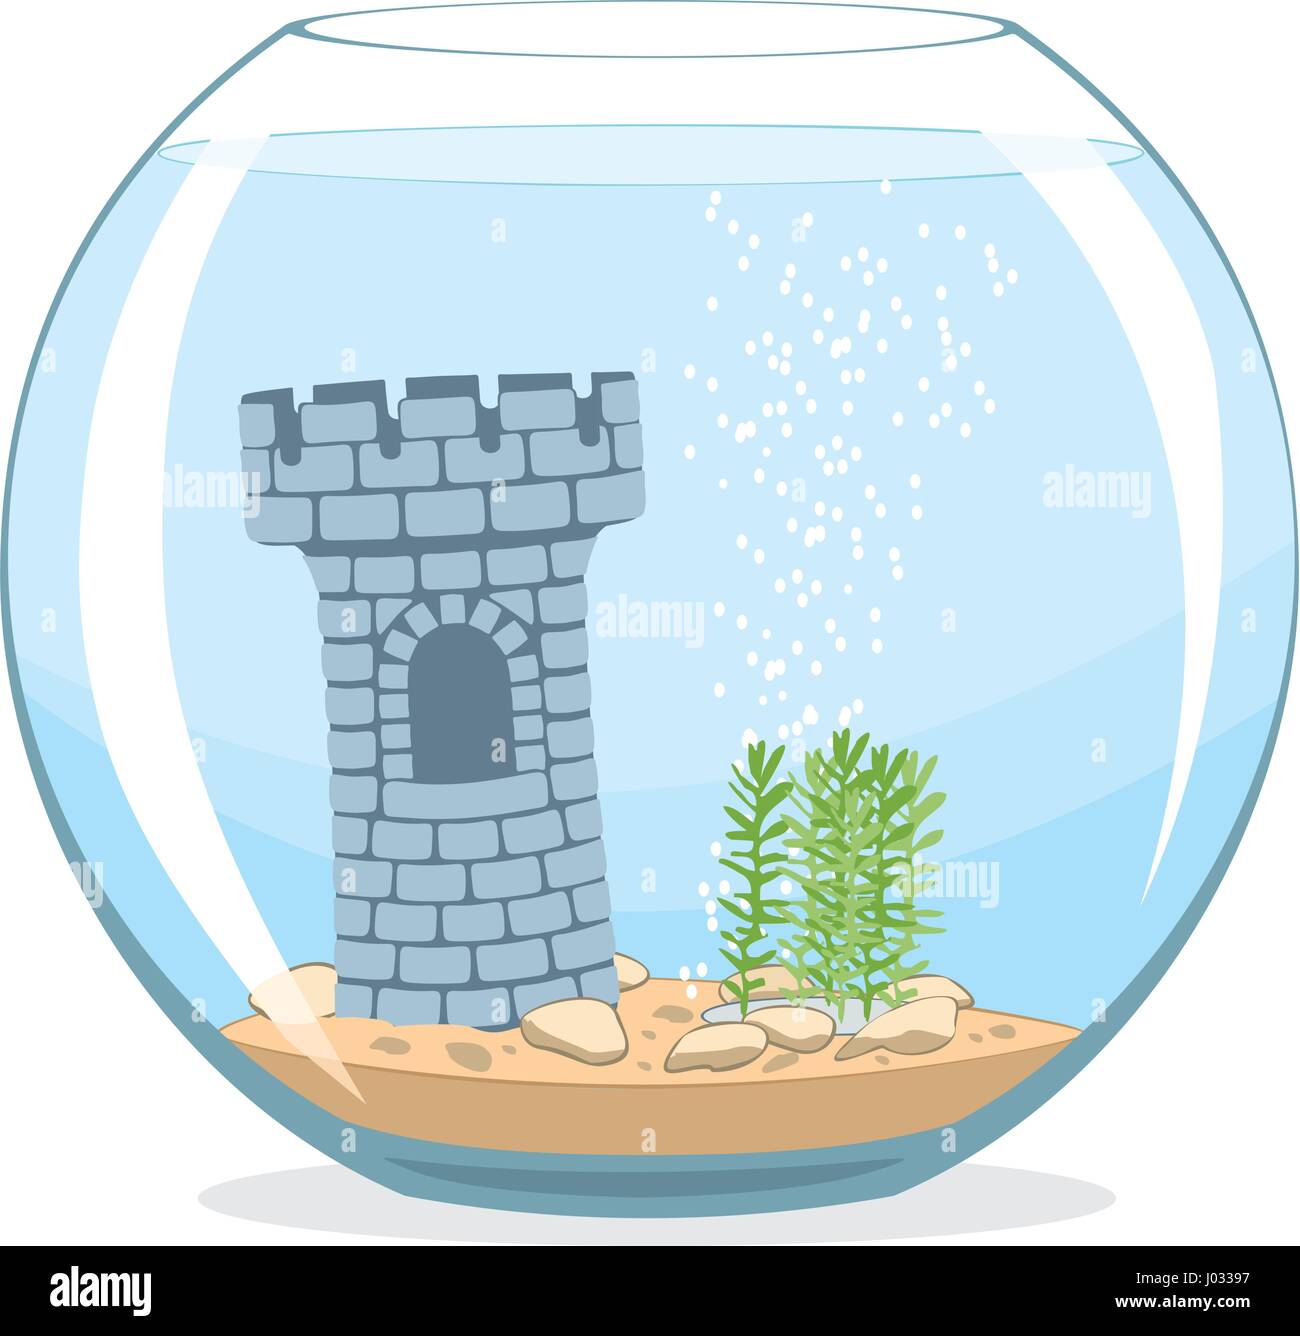 Fishbowl-Aquarium mit Burg auf weißem Hintergrund. Beengten Lebenskonzept. Vektor-illustration Stock Vektor